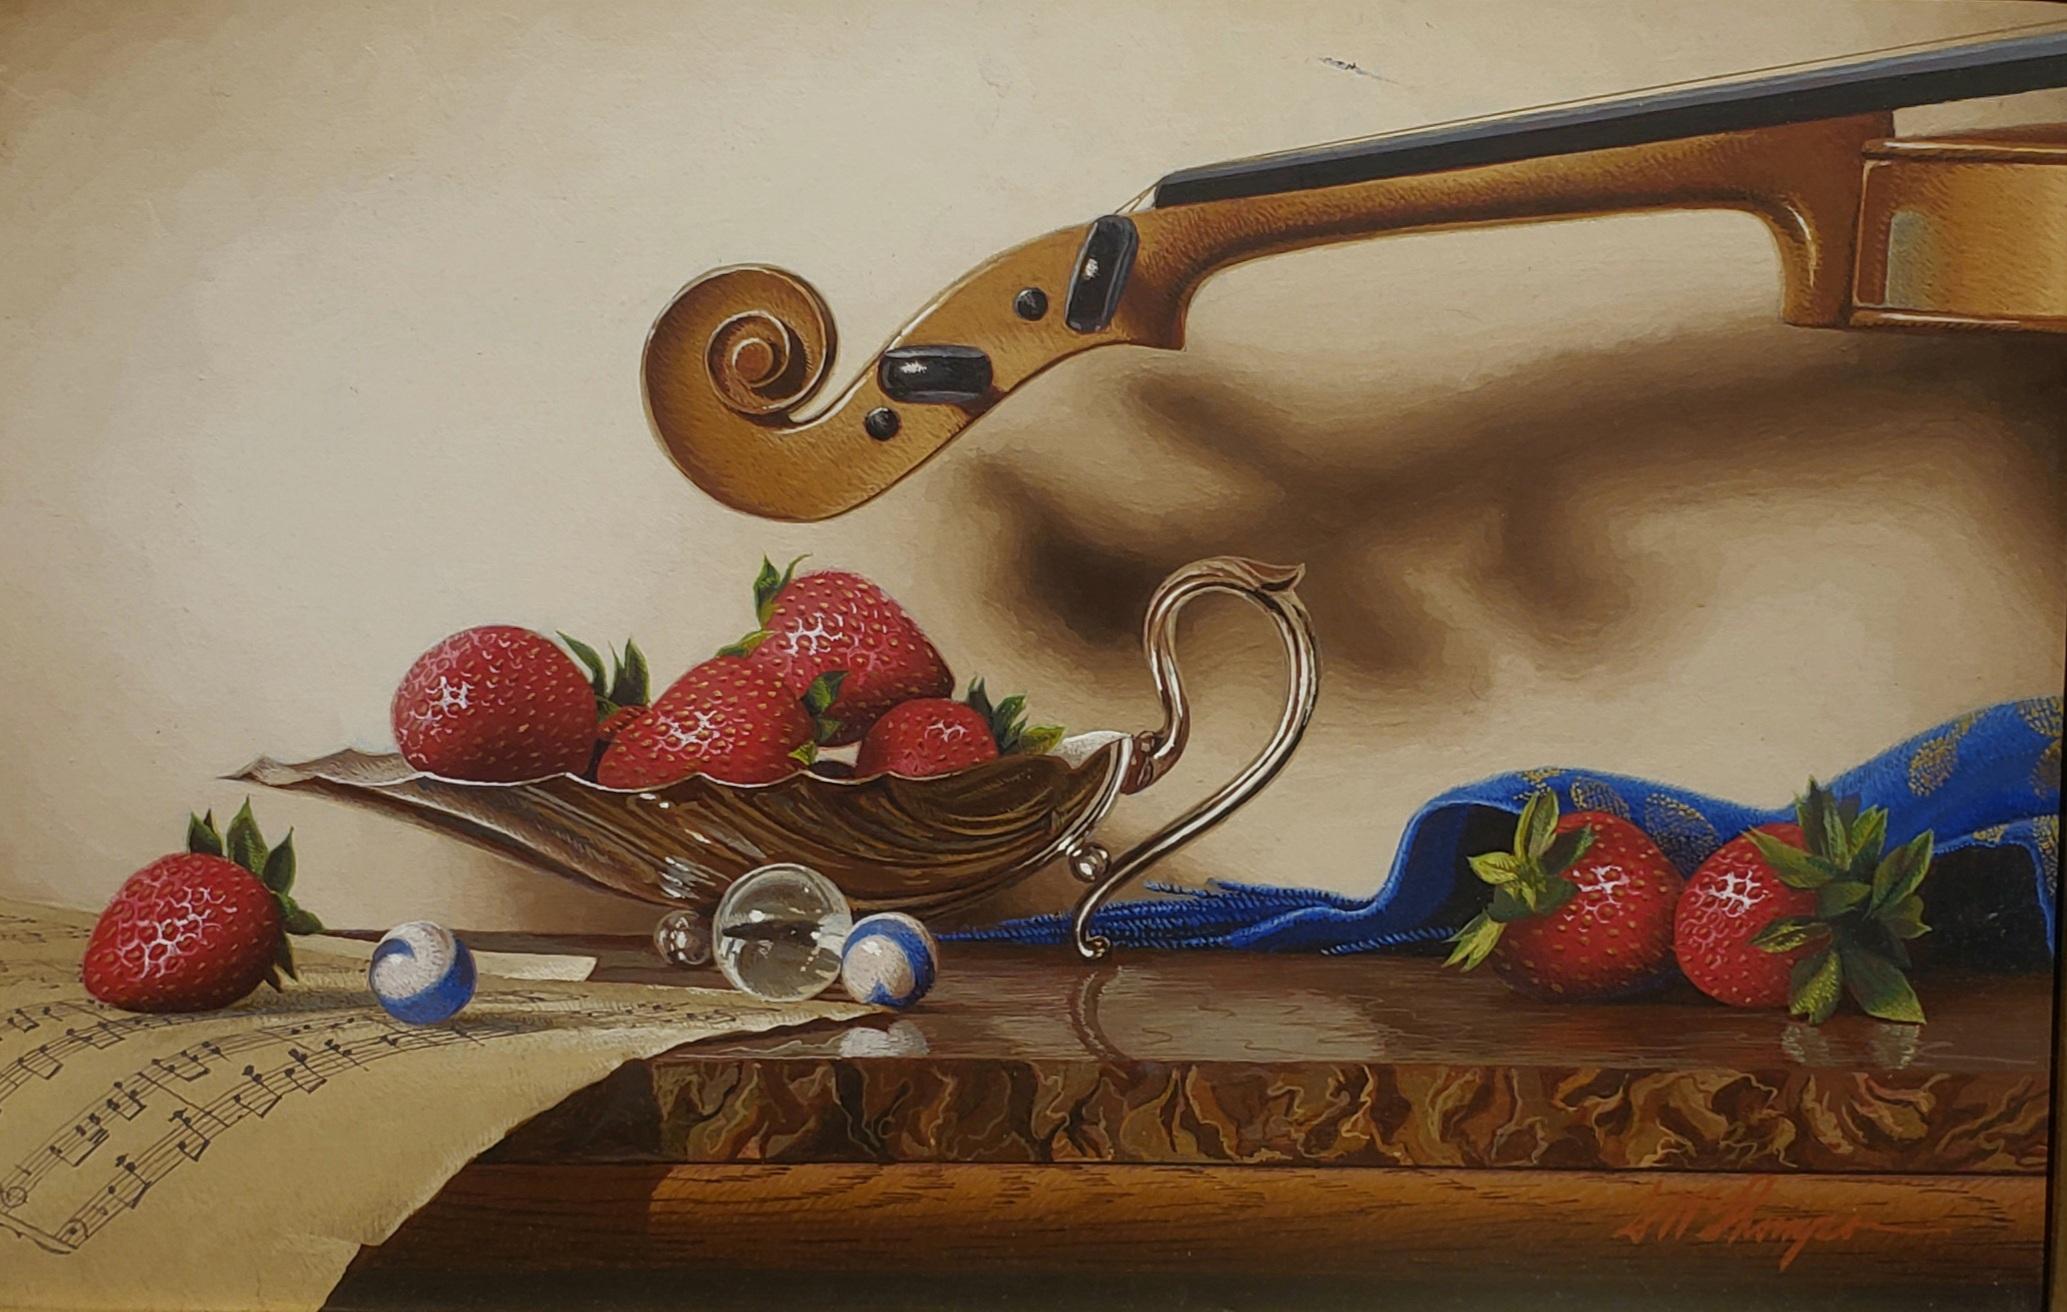  Silberne Kompottschale mit Violin, Egg Tempera,  Realistischer Realismus  3D-Erscheinung, amerikanischer Künstler